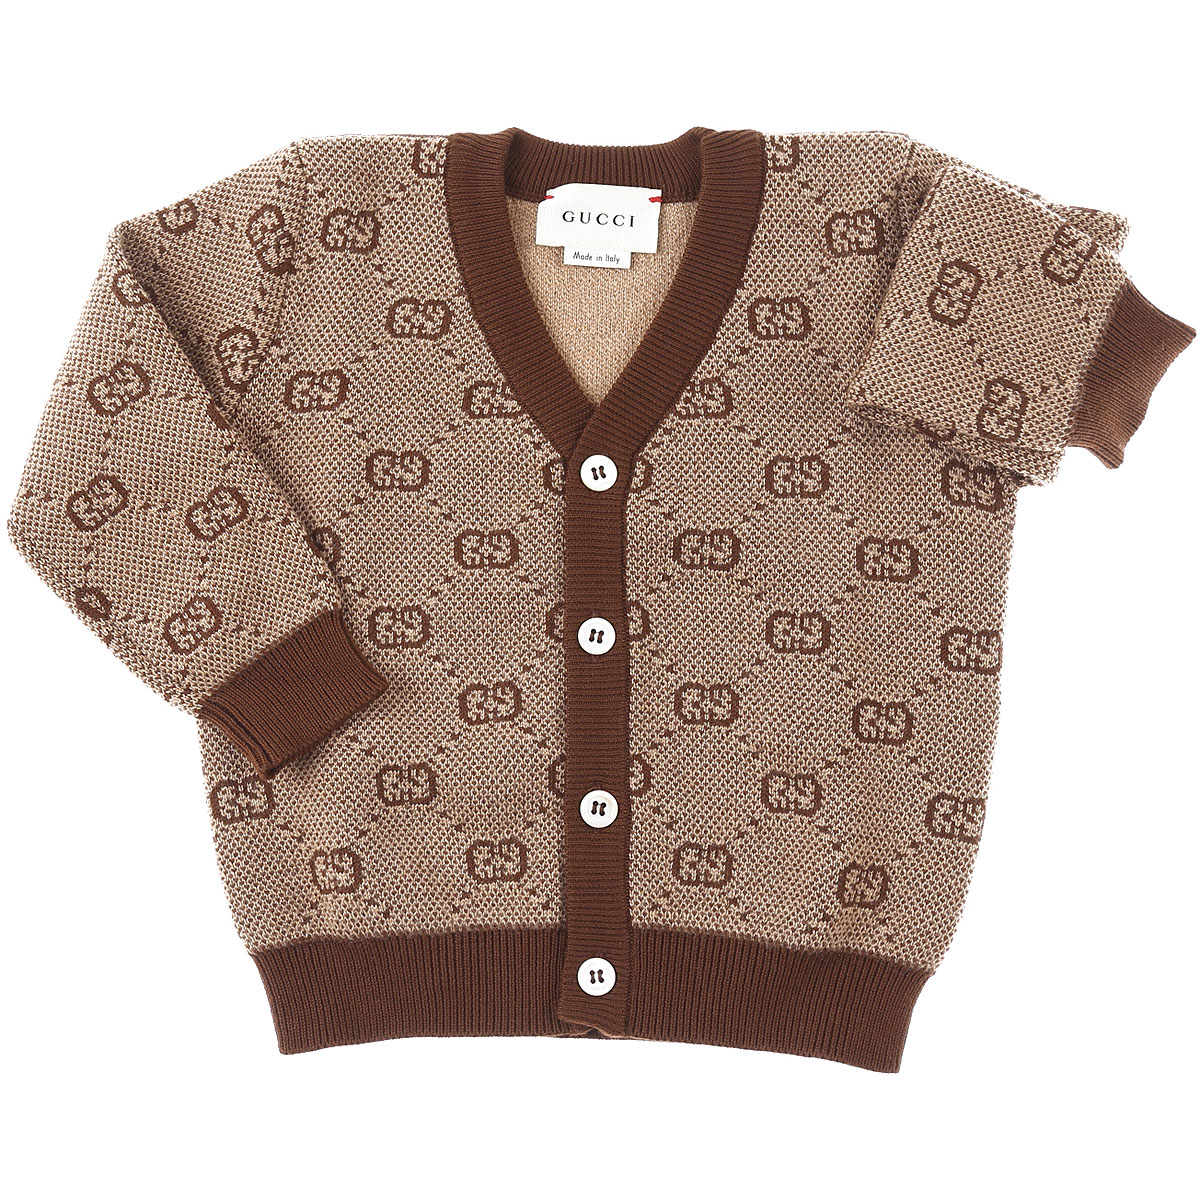 Gucci Baby Pullover für Jungen Günstig im Sale, Kamel, Wolle, 2017, 24M 6M 9M